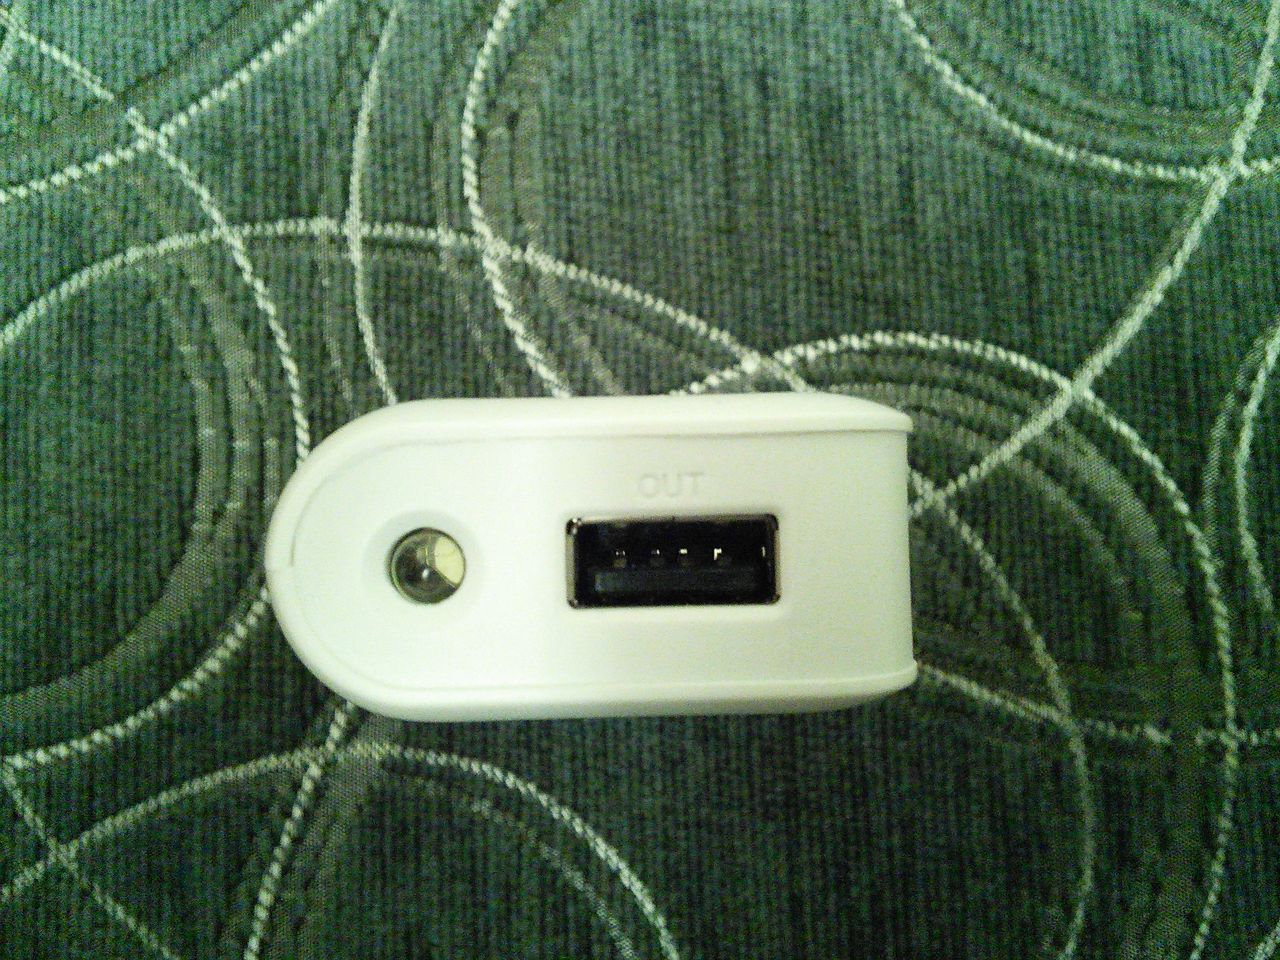 Krawędź zawierająca diodę LED oraz port USB do ładowania urządzeń